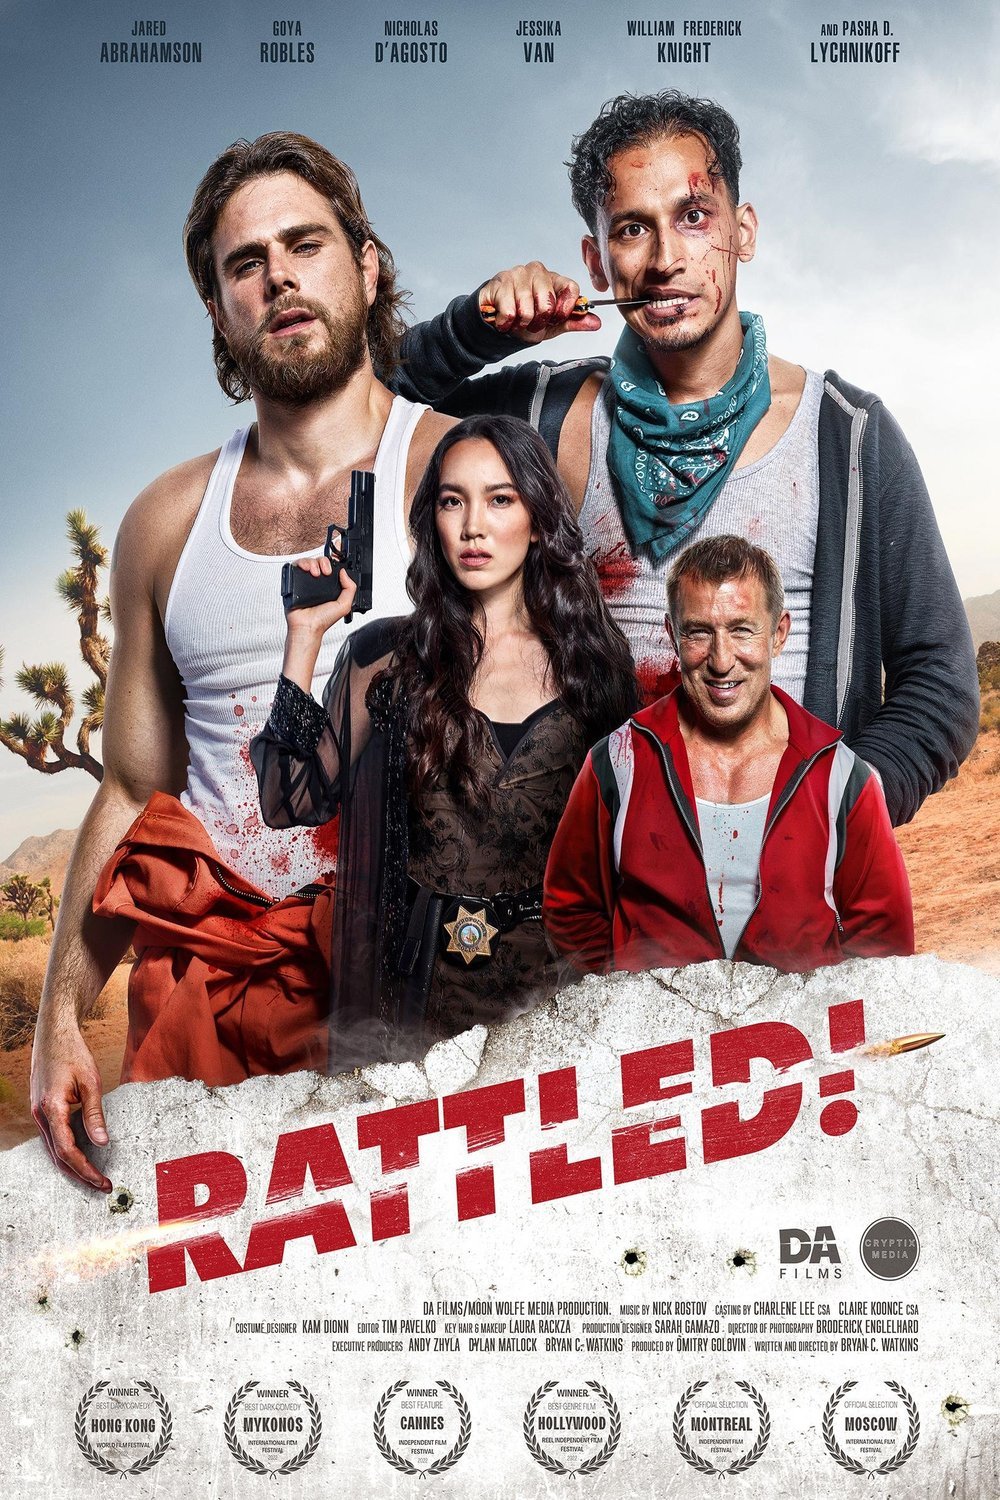 L'affiche du film Rattled!